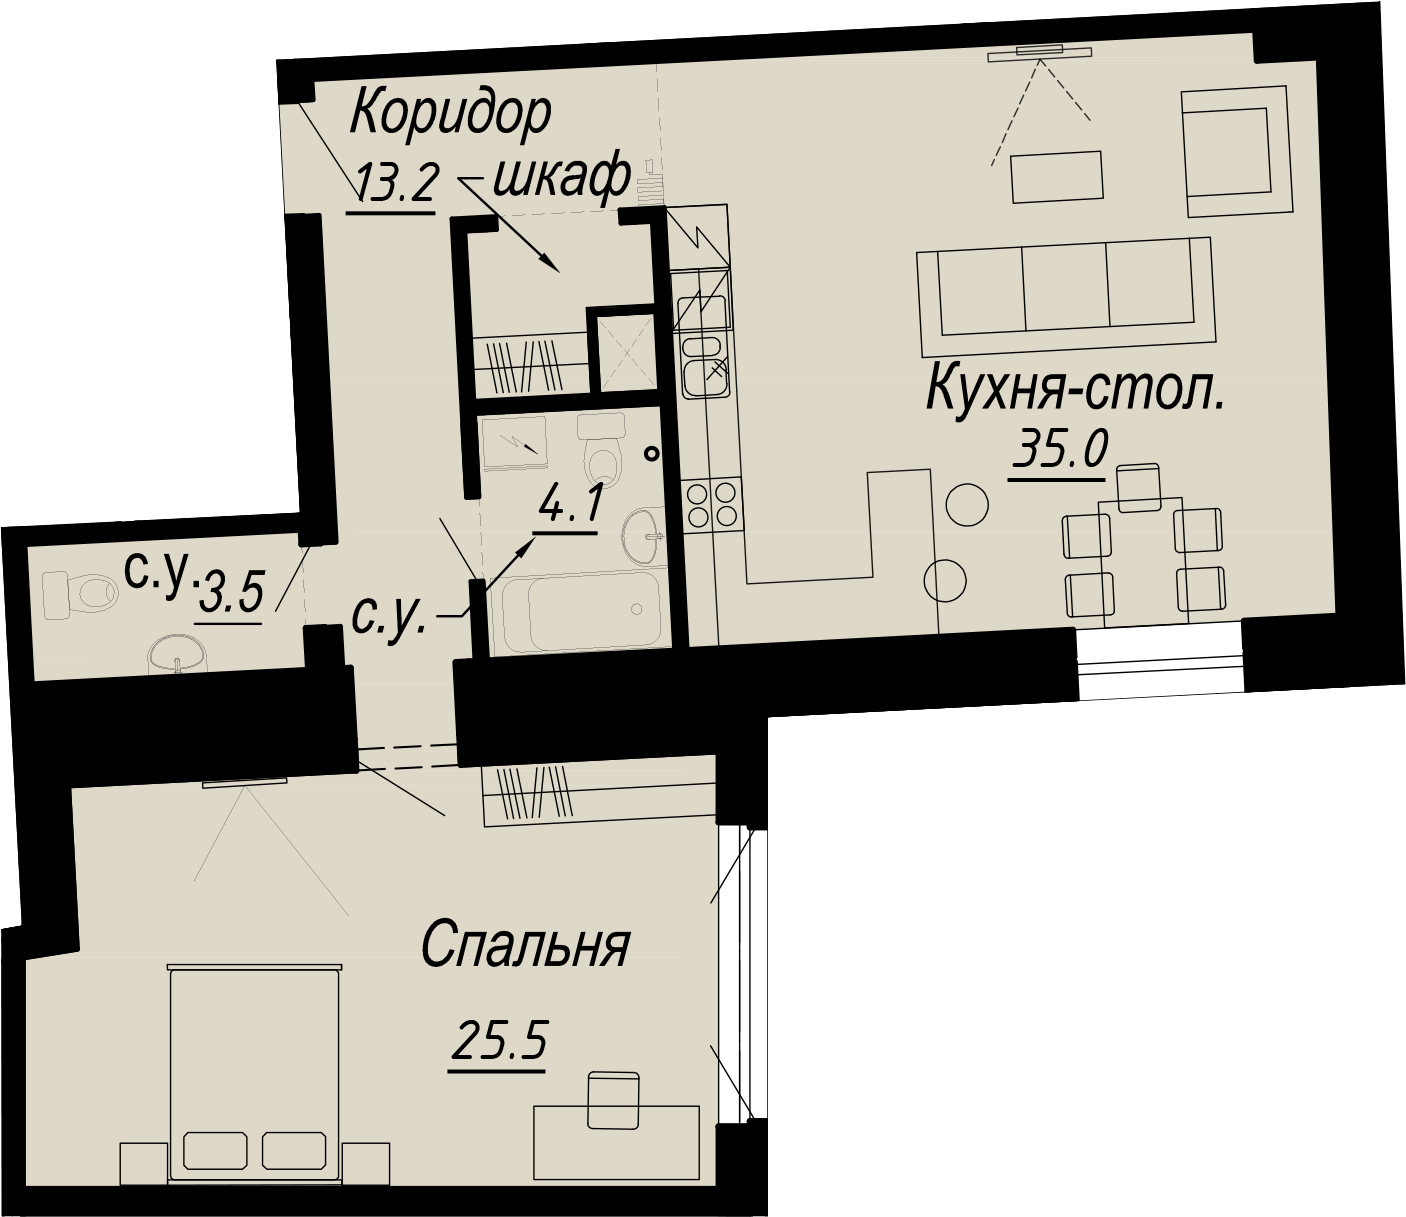 1-комнатная квартира  №20-4 в Meltzer Hall: 81.3 м², этаж 4 - купить в Санкт-Петербурге